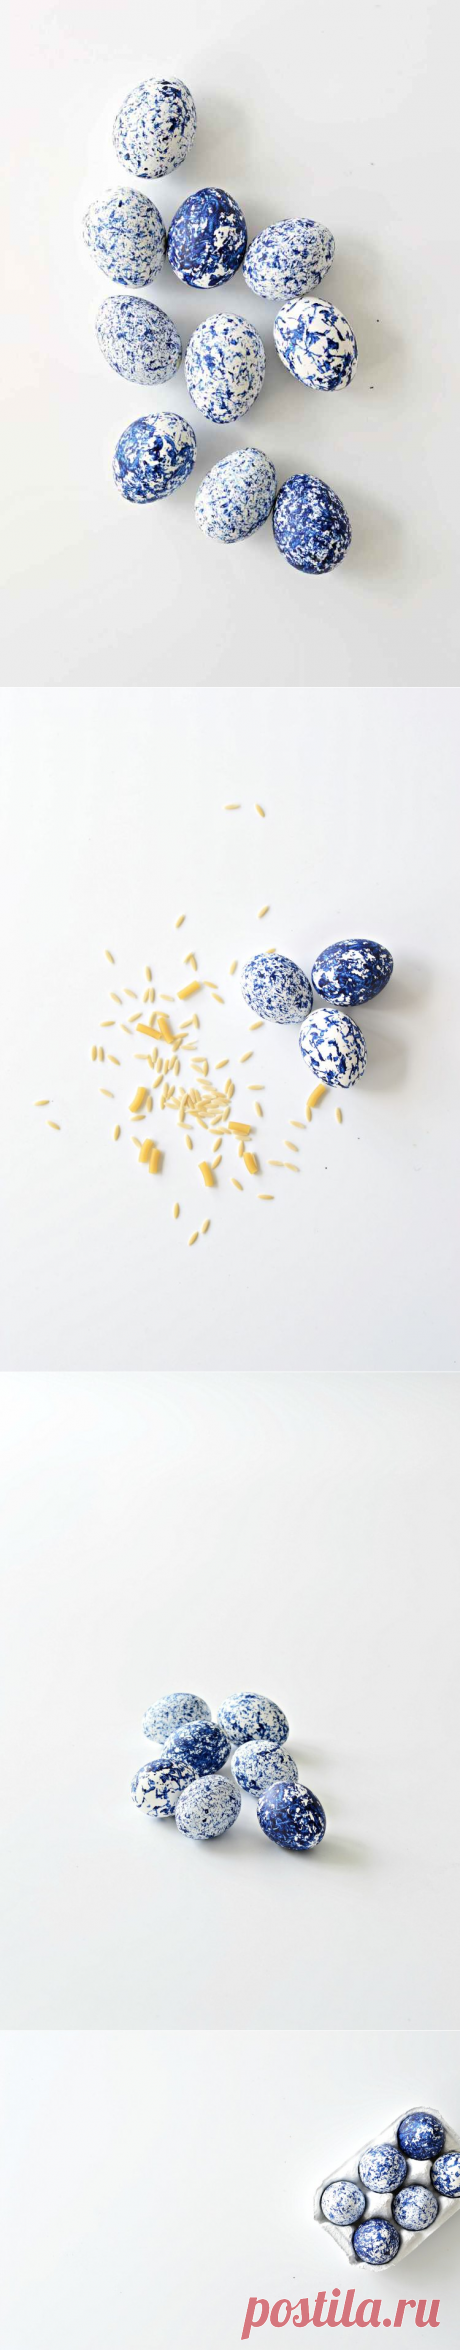 DIY крашеные пасхальные яйца с абстрактным рисунком - Домашний декор - Your DIY Family